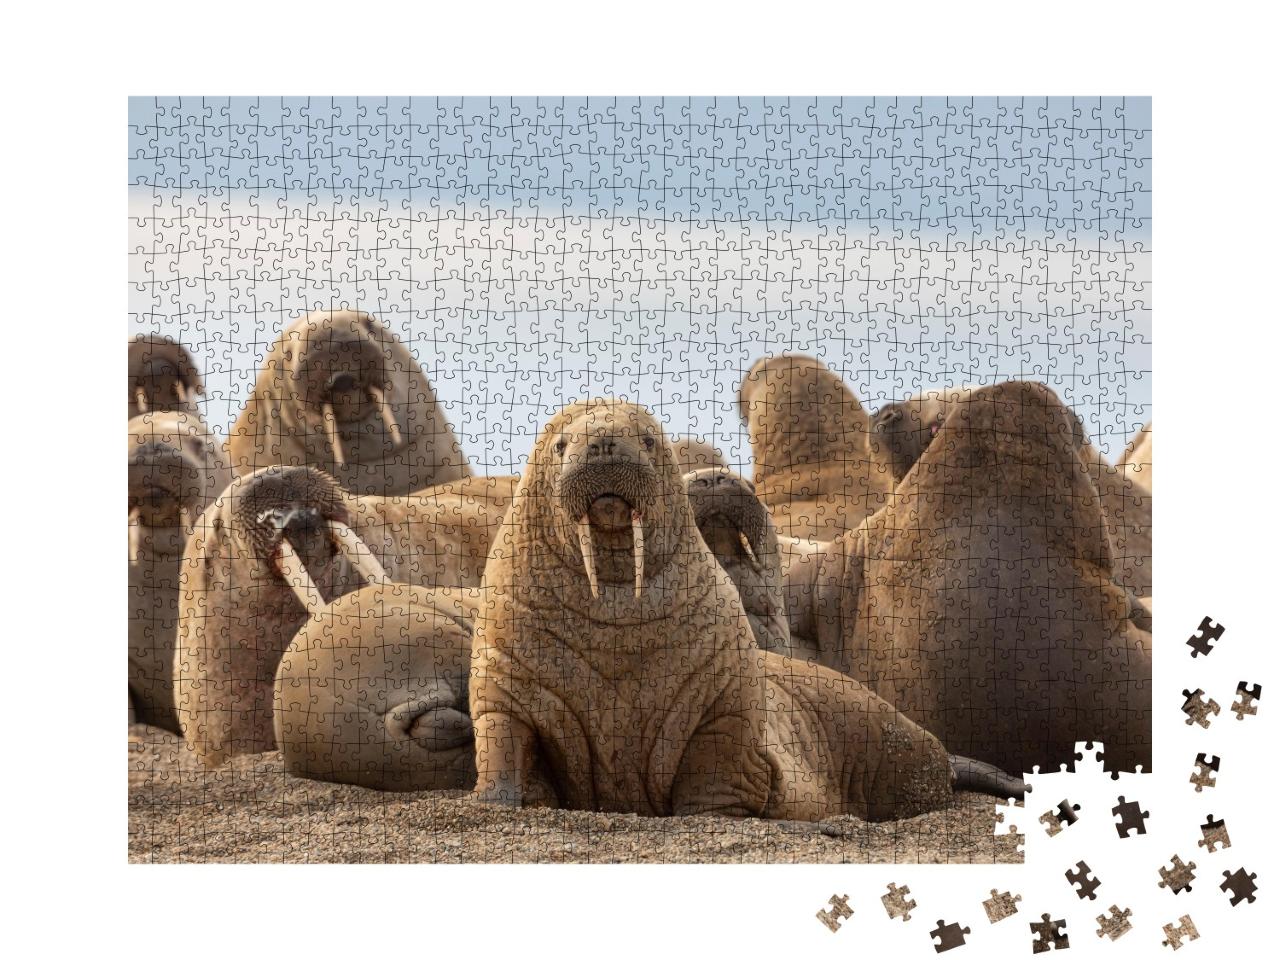 Puzzle de 1000 pièces « Un groupe de morses sur la plage de sable »